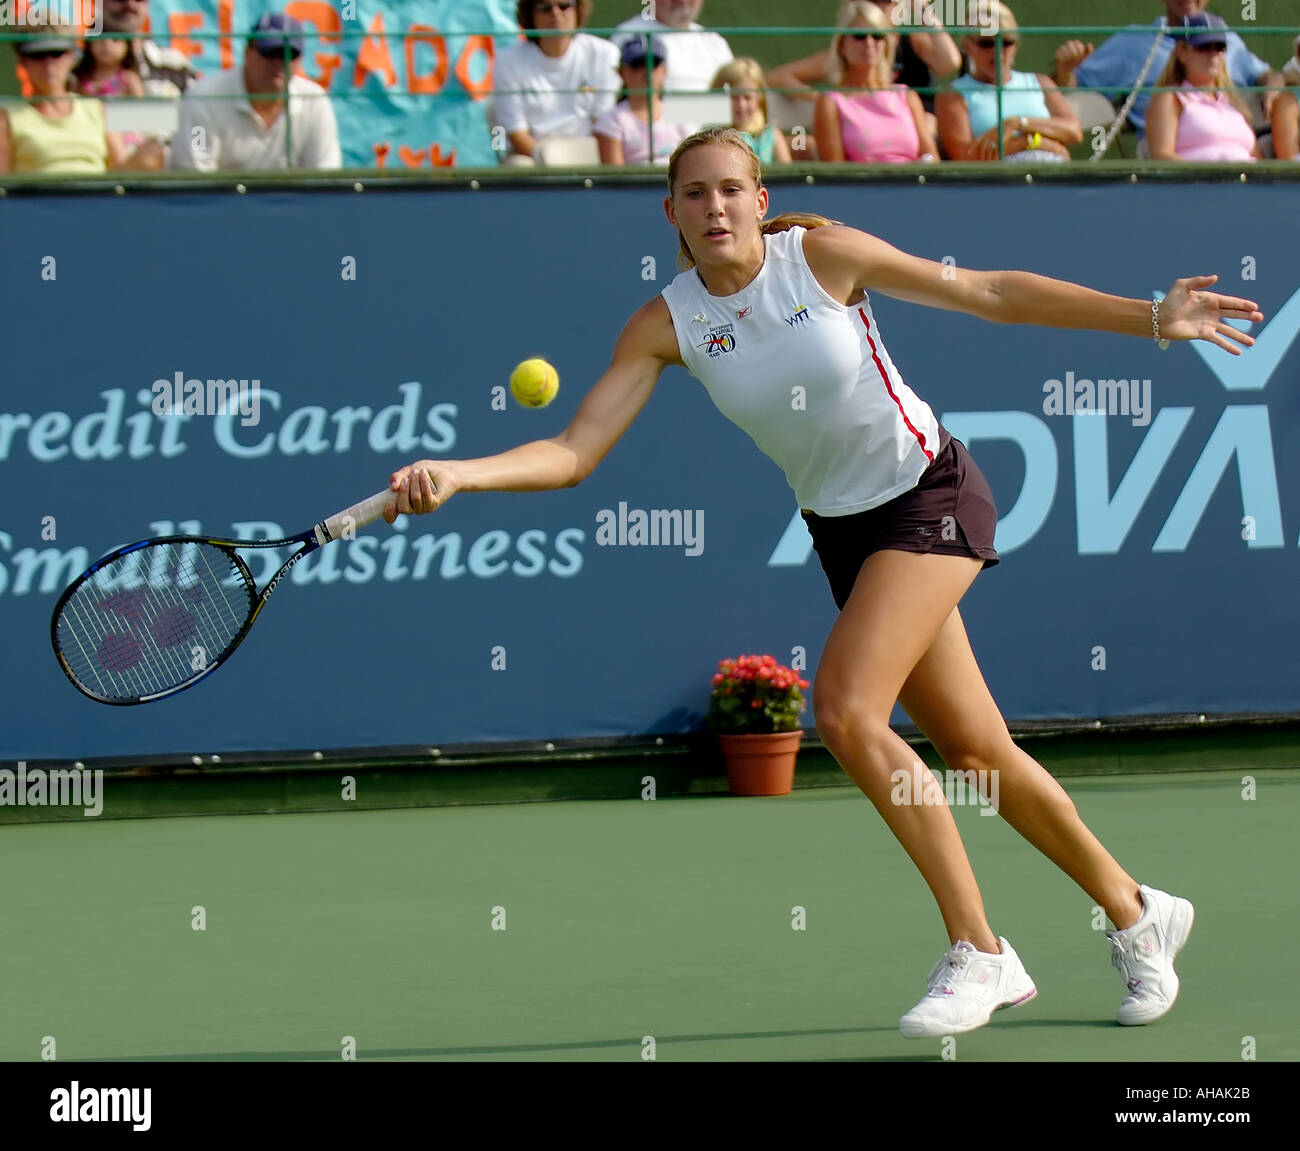 Il WTA giocatore di tennis professionista Nicole VAIDISOVA colpisce un ritorno al suo avversario in WTT tennis Foto Stock